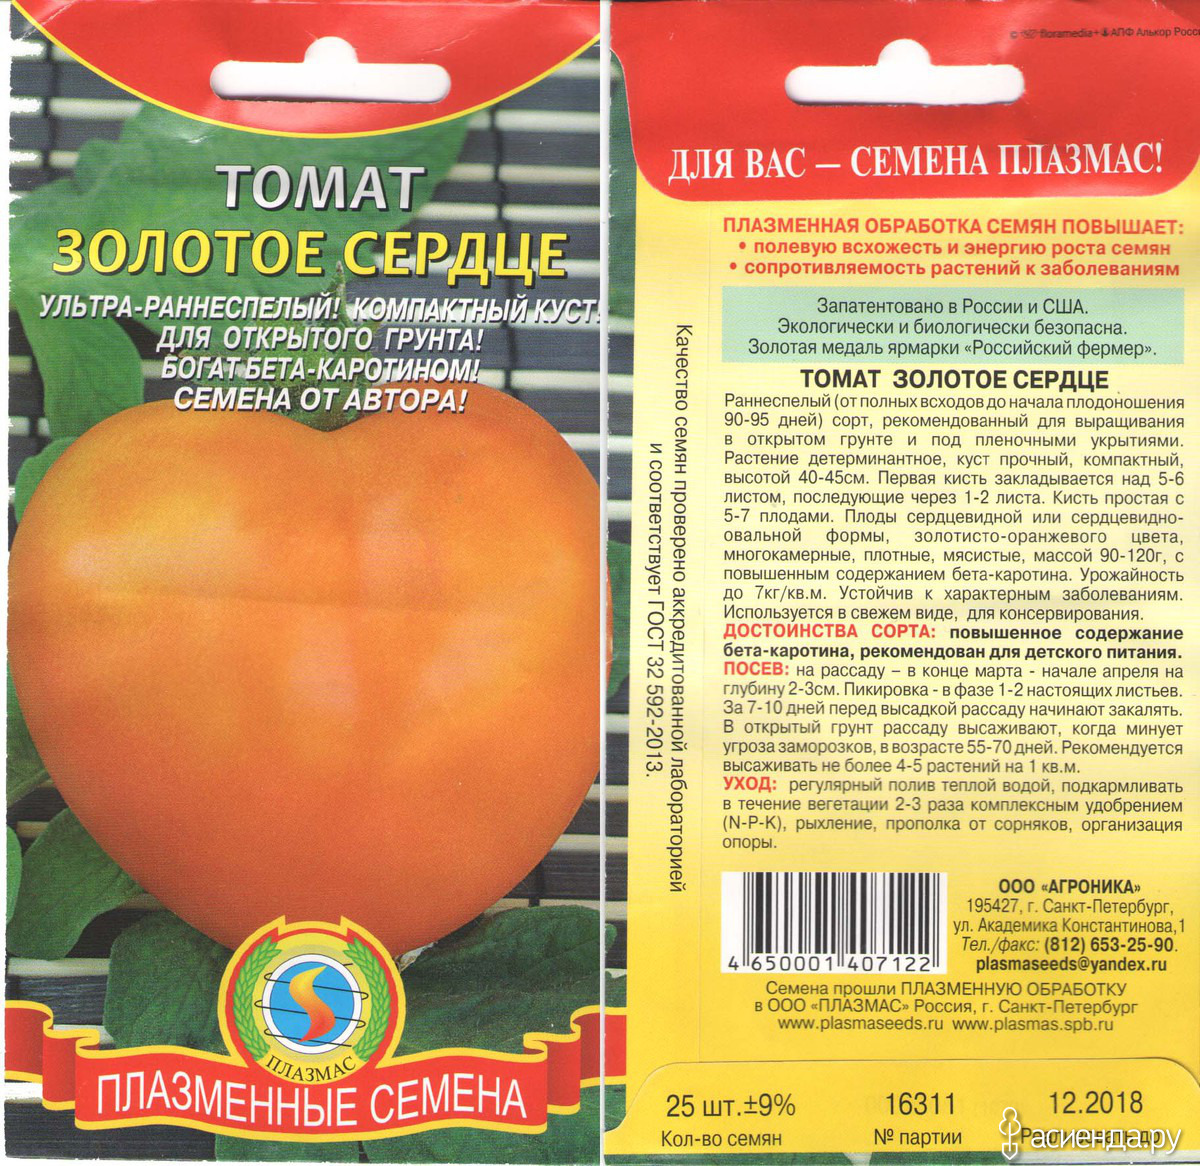 Описание томата с оранжевыми плодами Золотая теща и правила выращивания гибридного сорта